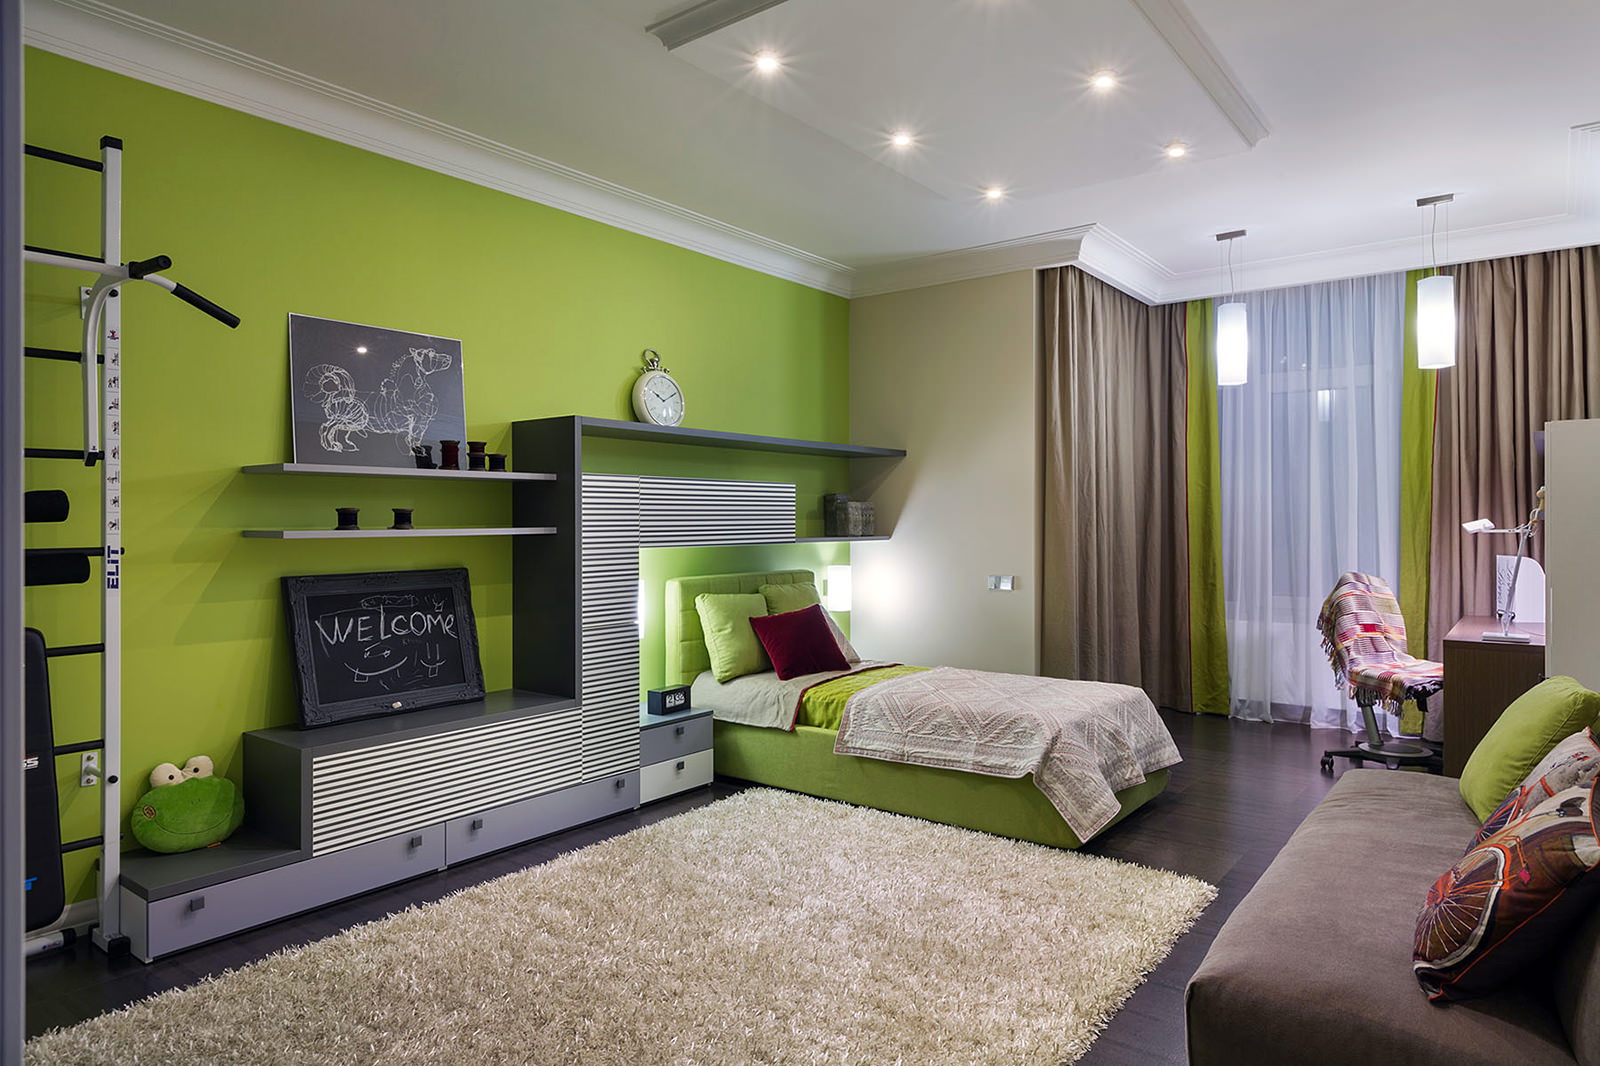 Светло зеленые обои в интерьере спальни